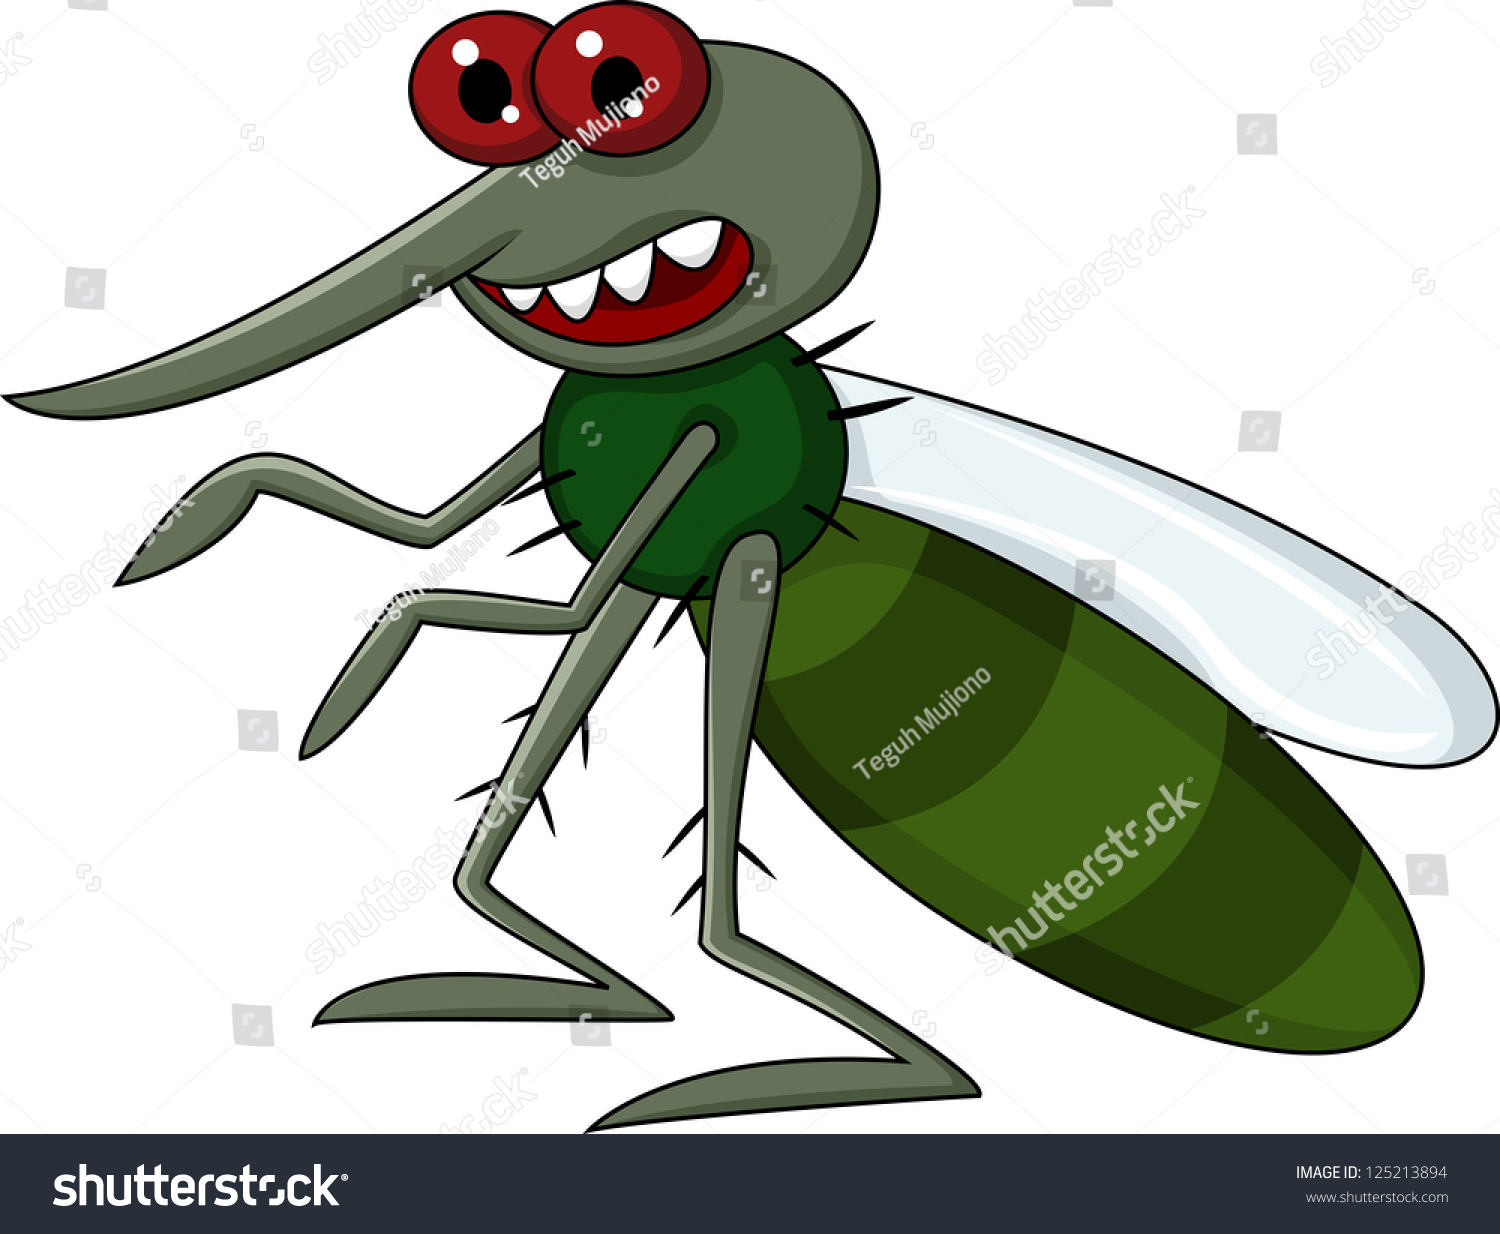 Mosquito Cartoon Stock Vector 125213894 - Shutterstock